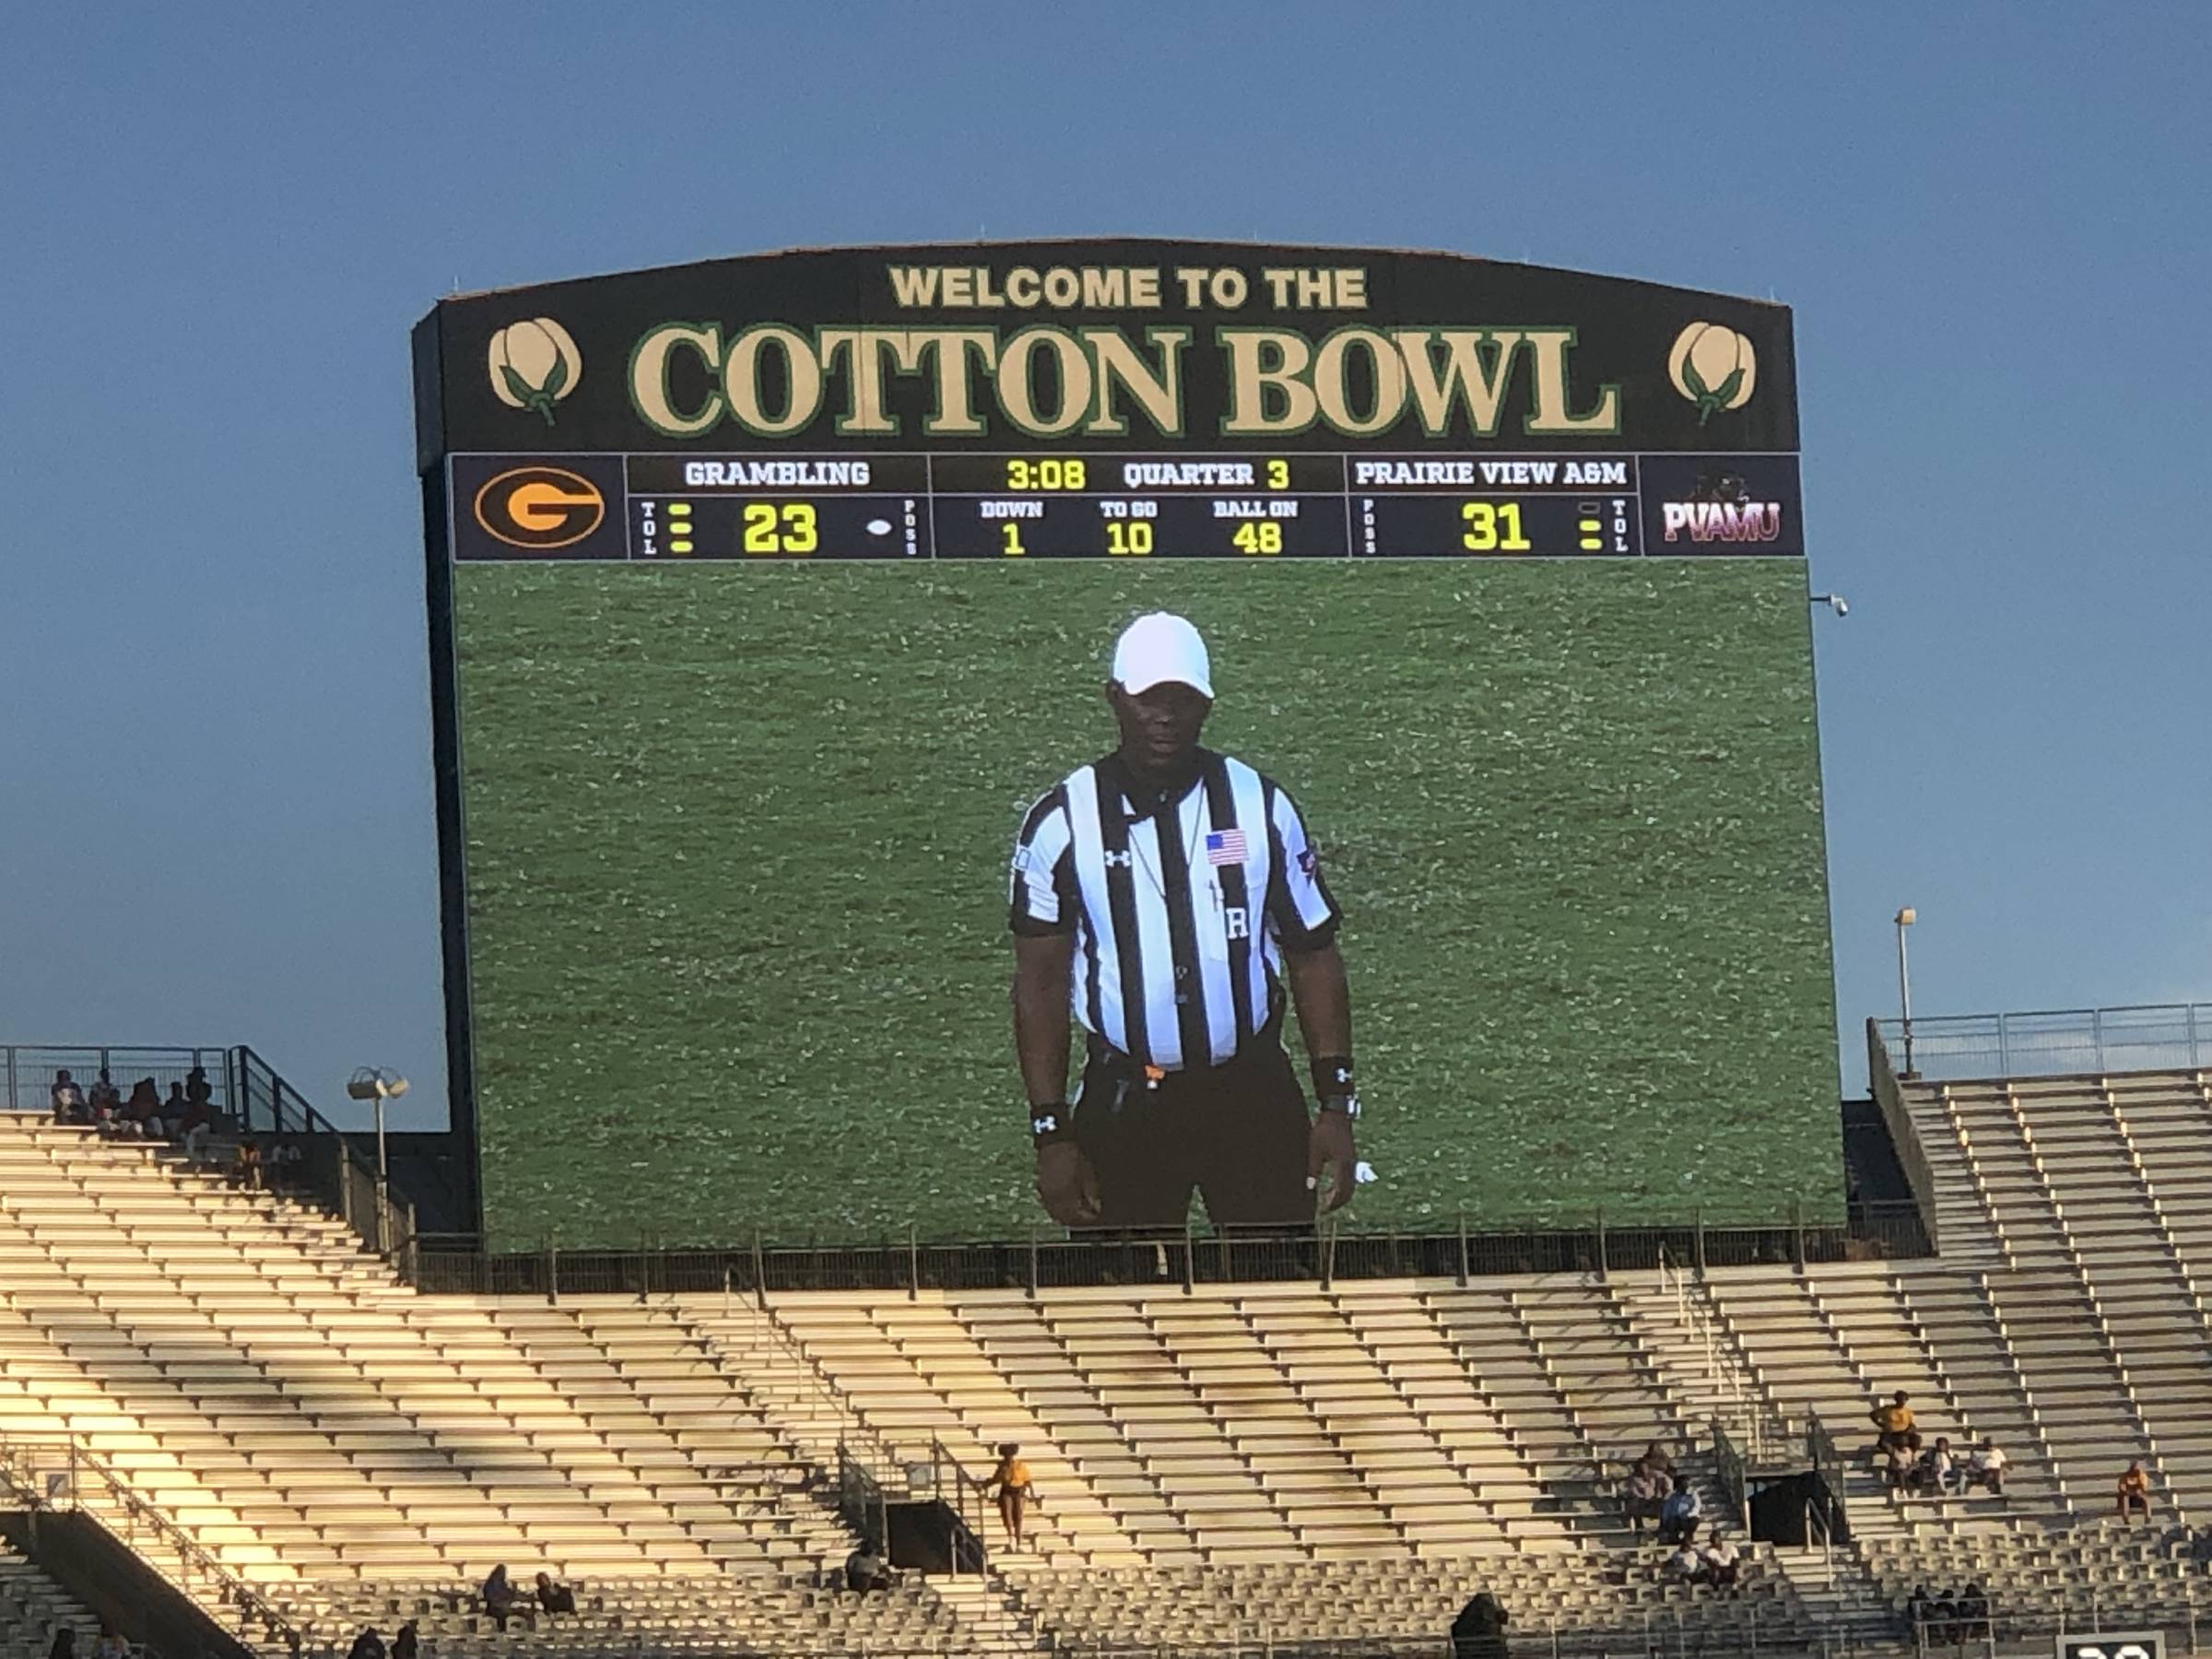 south scoreboard at Cotton Bowl